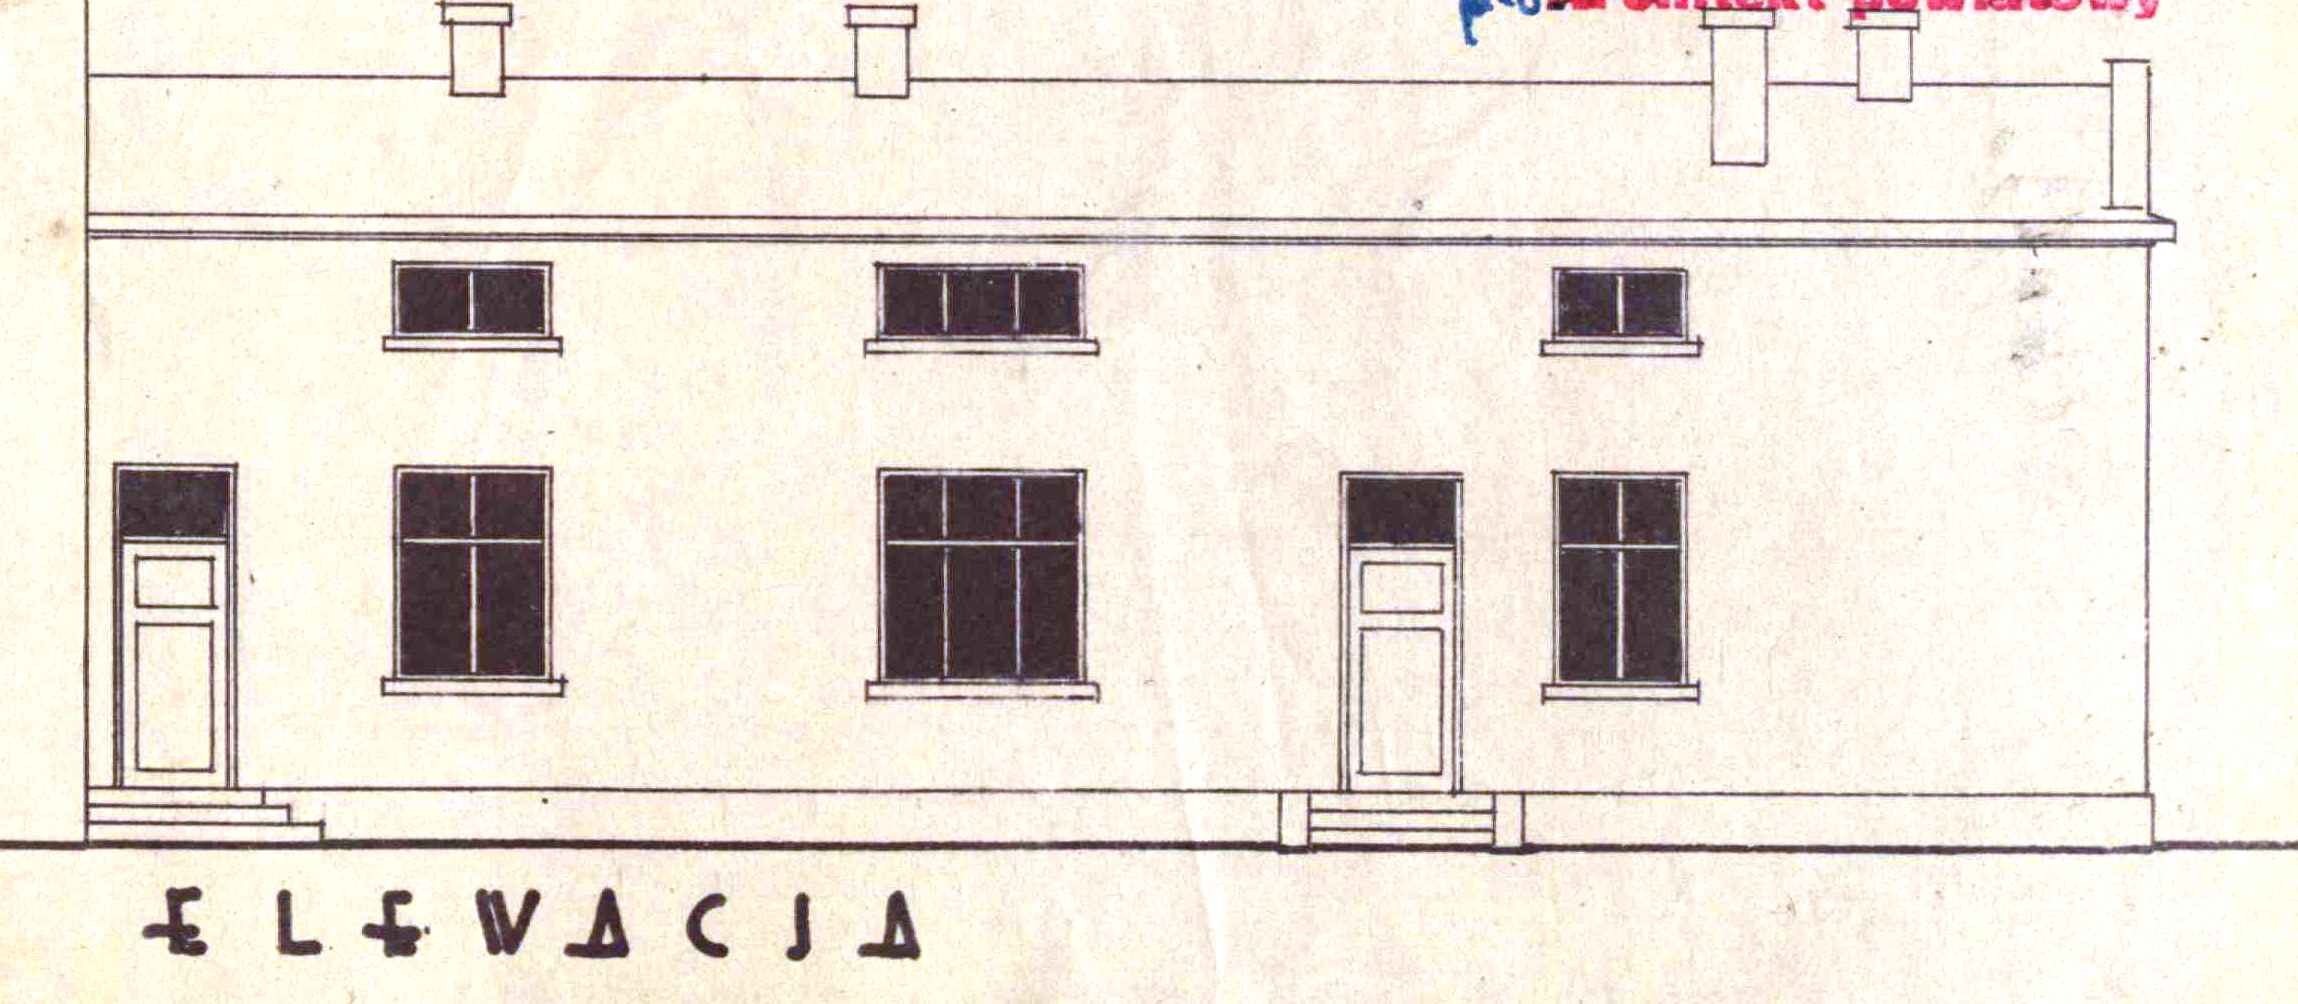  http://przewodnicyzamosc.pl/hosting/imgs/15974_Styczniowa 2-4, 1938 fasada.jpg 